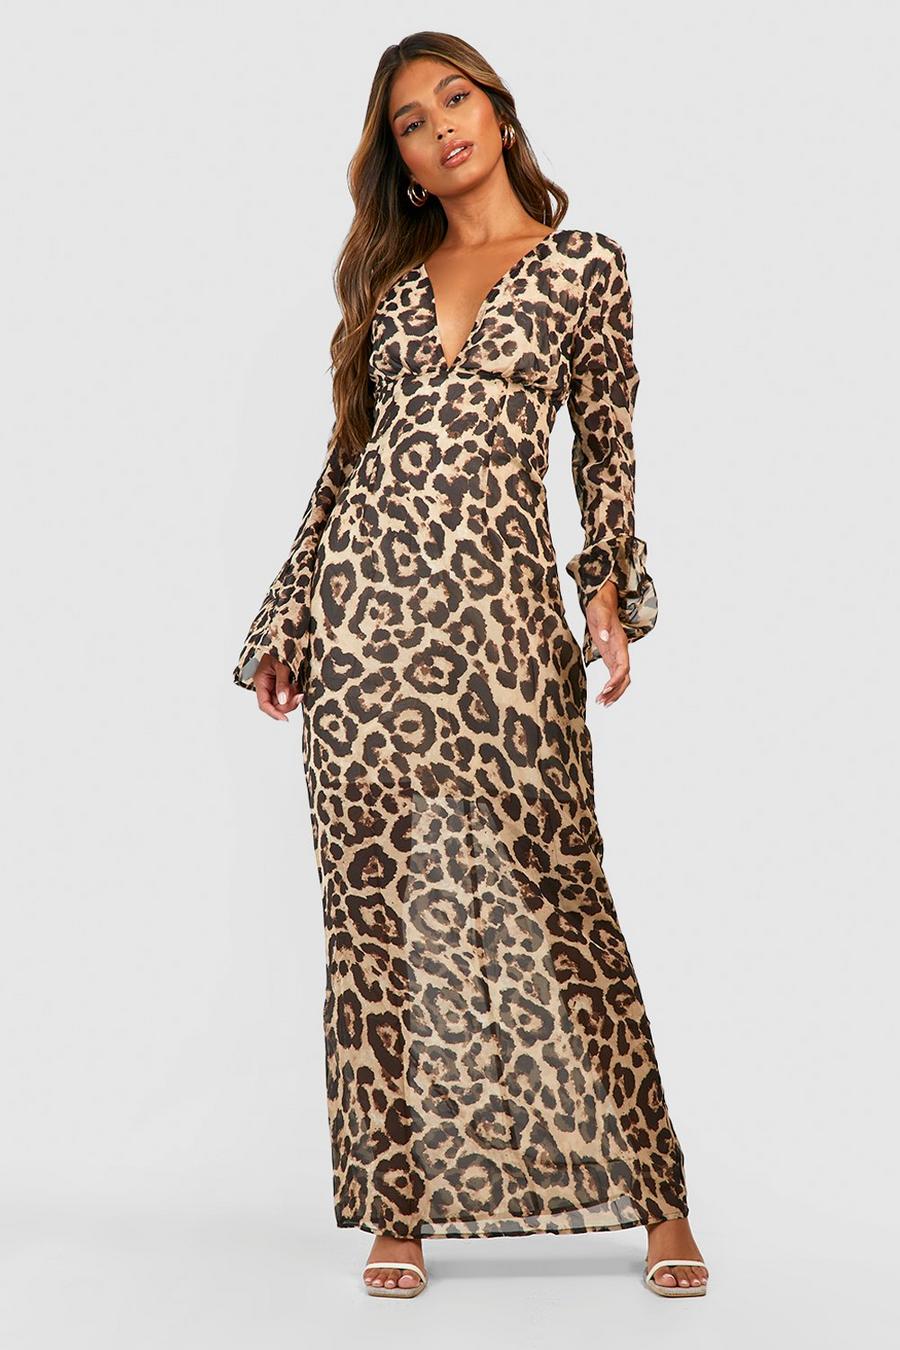 Women's Leopard Print Chiffon Maxi Dress | Boohoo UK